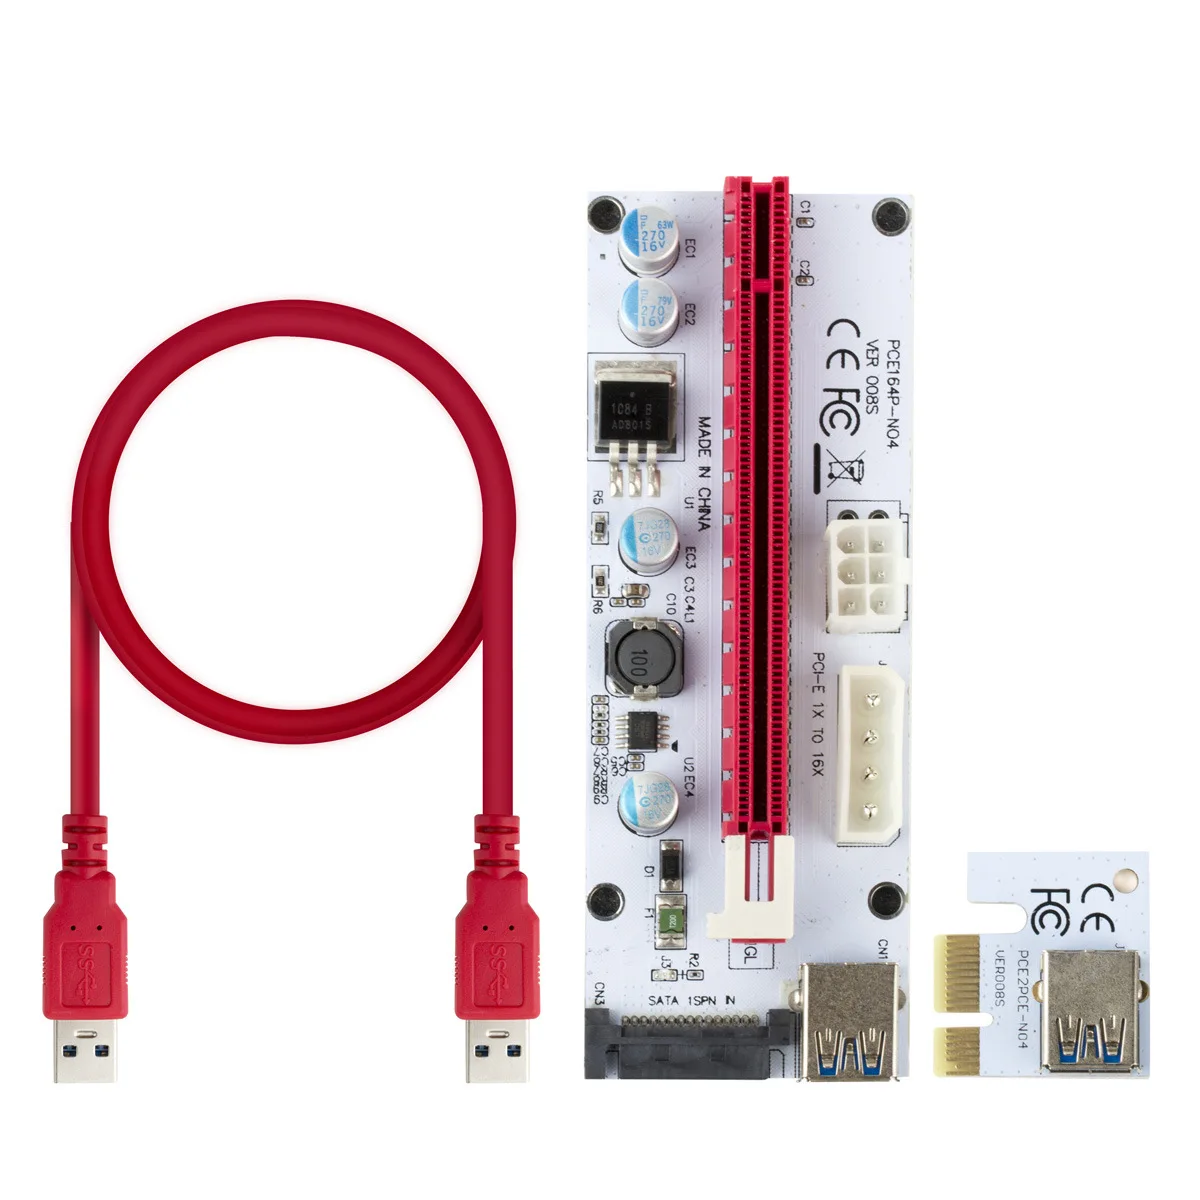 BTC Miner PCIe Scheda riser PCI-E 1x a 16x 1 a 4 USB 3.0 Moltiplicatore Molex 4 HOT 